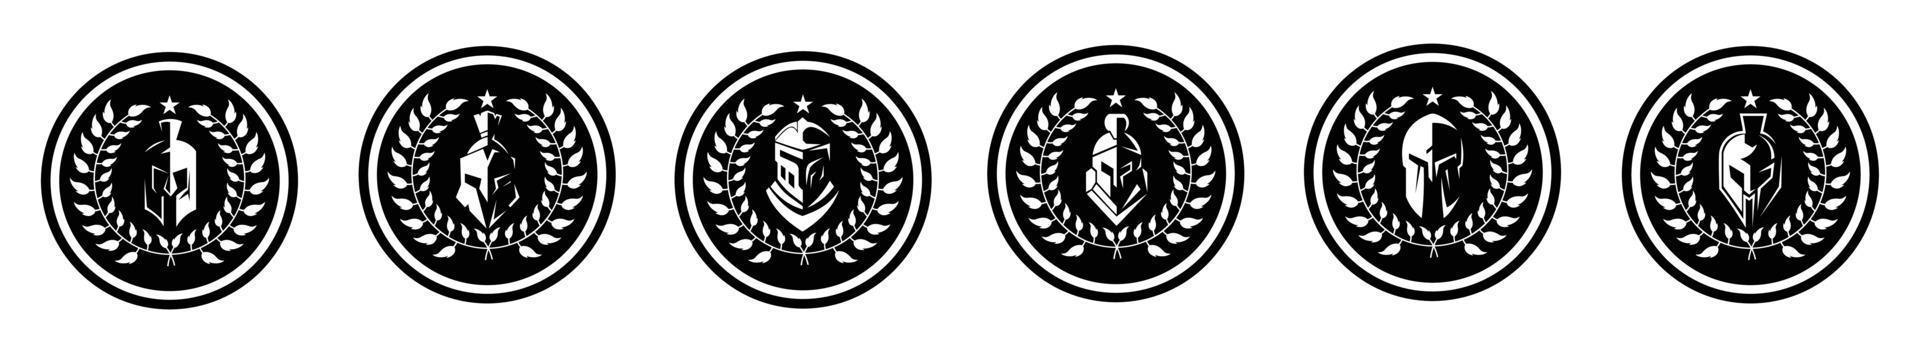 Medaillon mit spartanischem Spartan-Helm für griechischen Krieger-Logo-Design-Vektor vektor